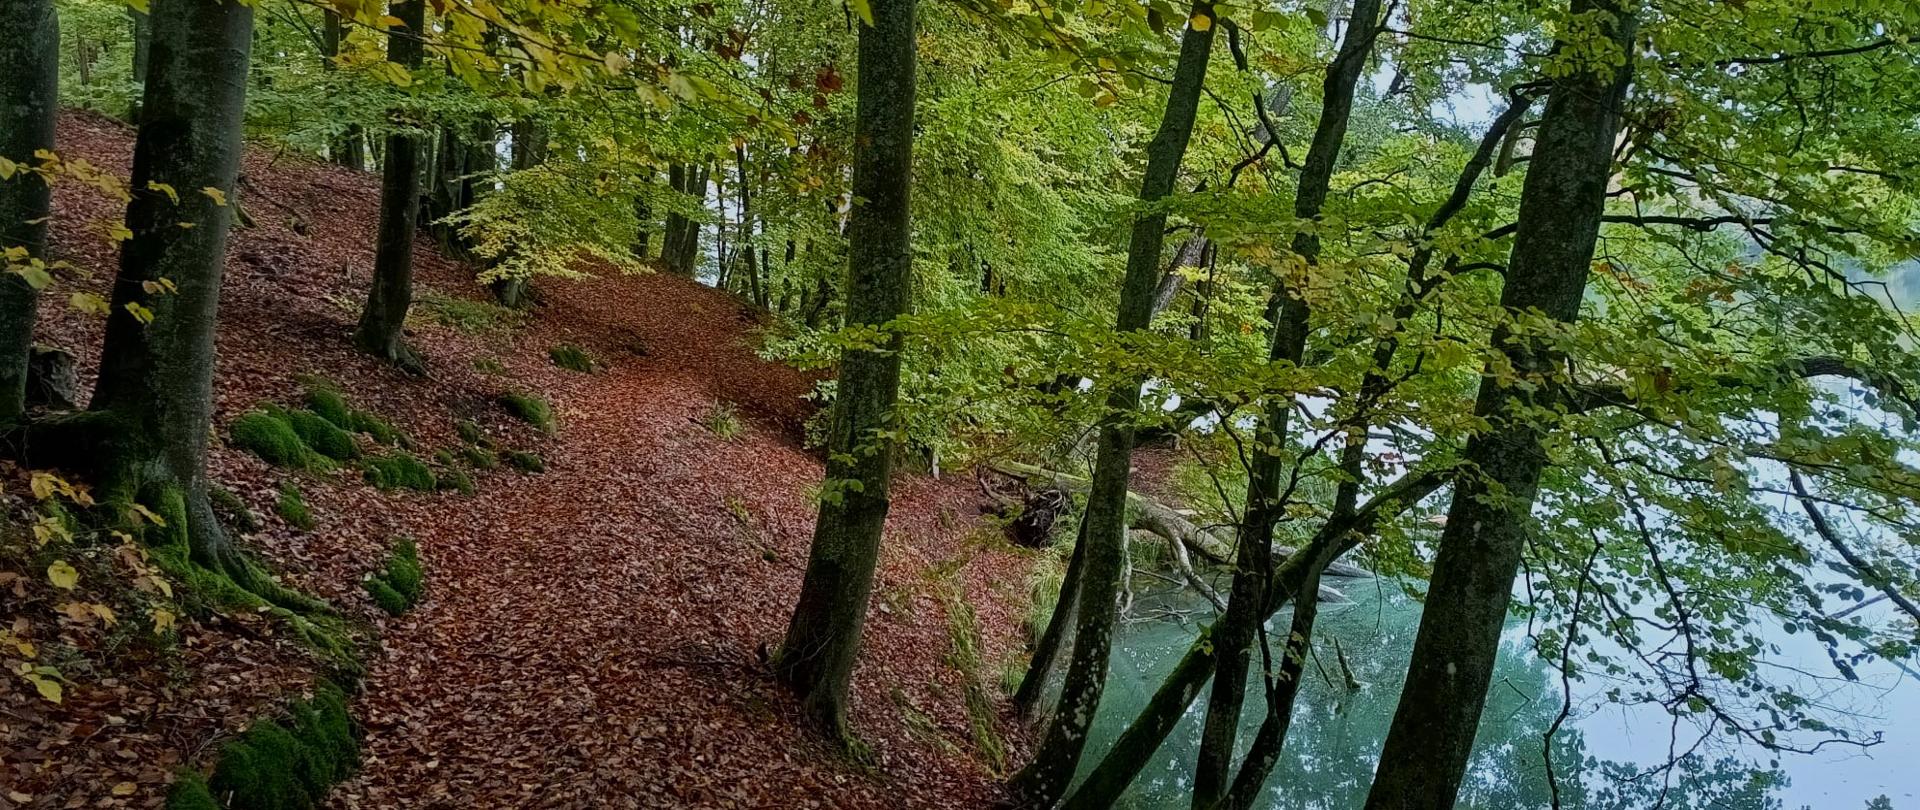 Leśny krajobraz. W centralnej części lekko nachylona ścieżka, po lewej stronie drzewa rosnące na niewielkiej skarpie. Po prawej stronie jezioro.